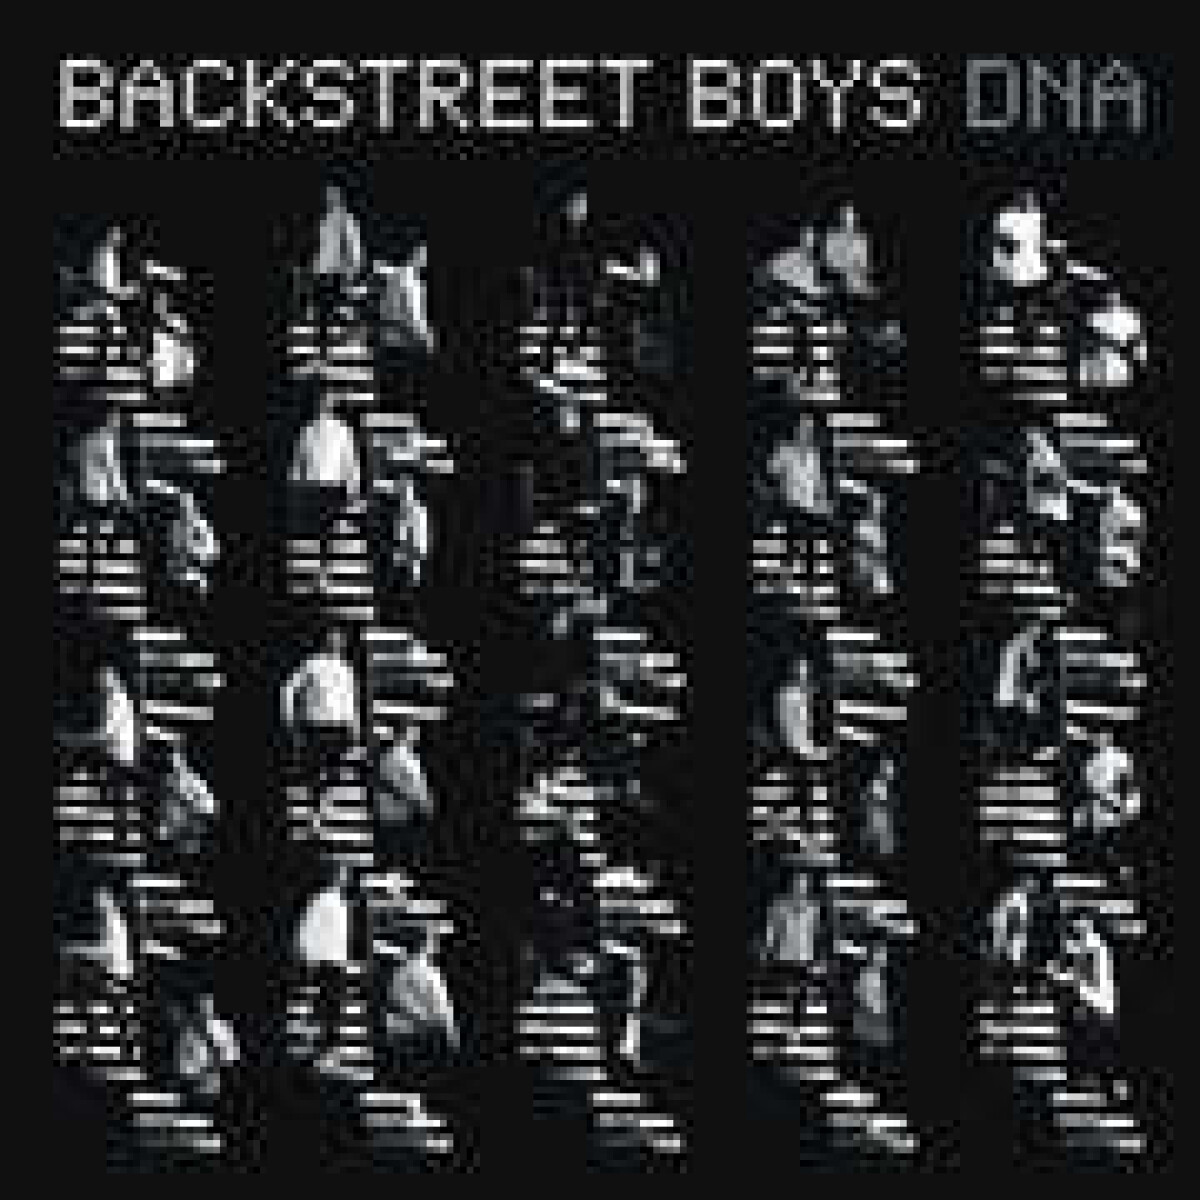 Backstreet Boys-dna - Vinilo 